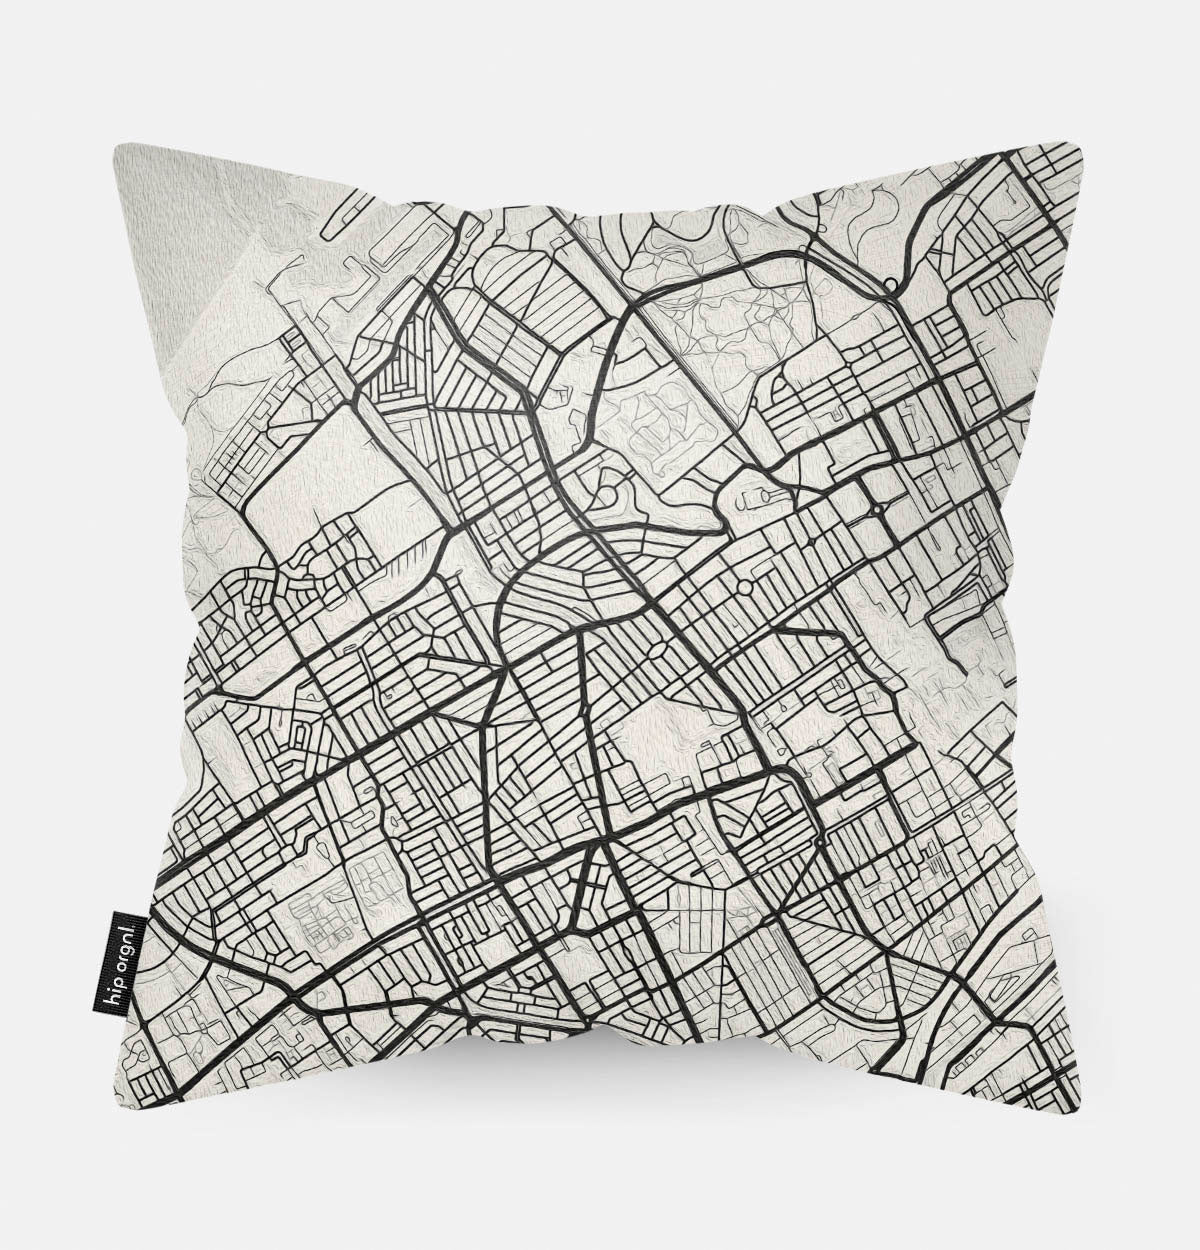 Achterzijde van sierkussen met kaart Den Haag stad in zwart wit